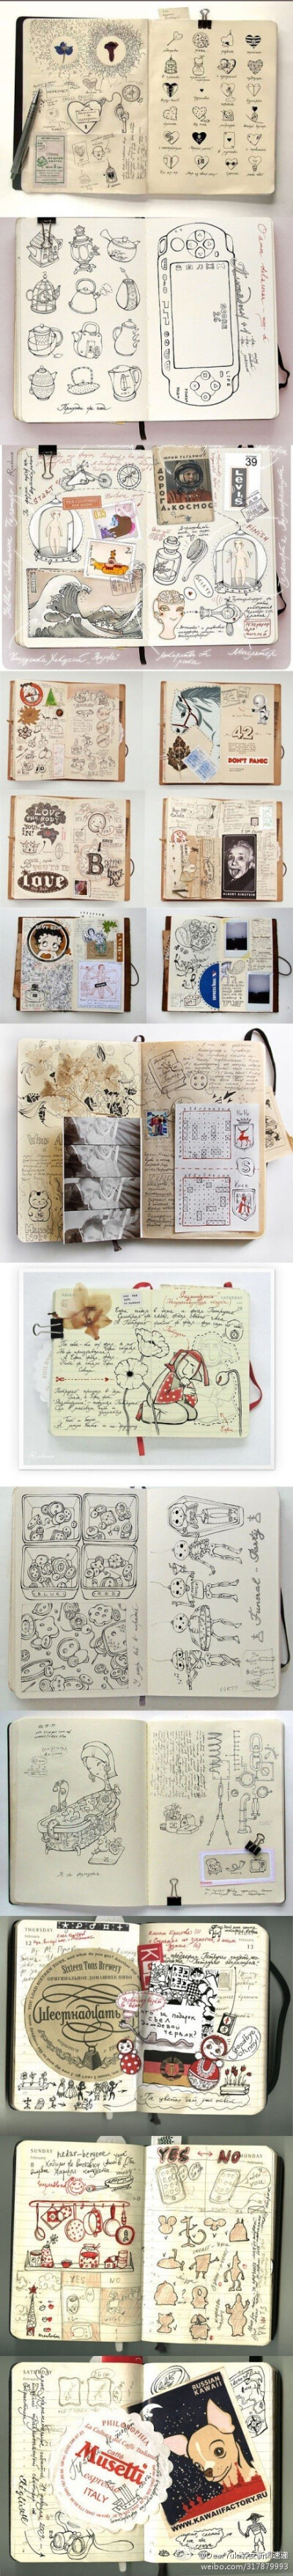 乌克兰画家的创意本子。也是记录小生活的小本子。你也有这样记录生活点滴的绘画小本子吗？